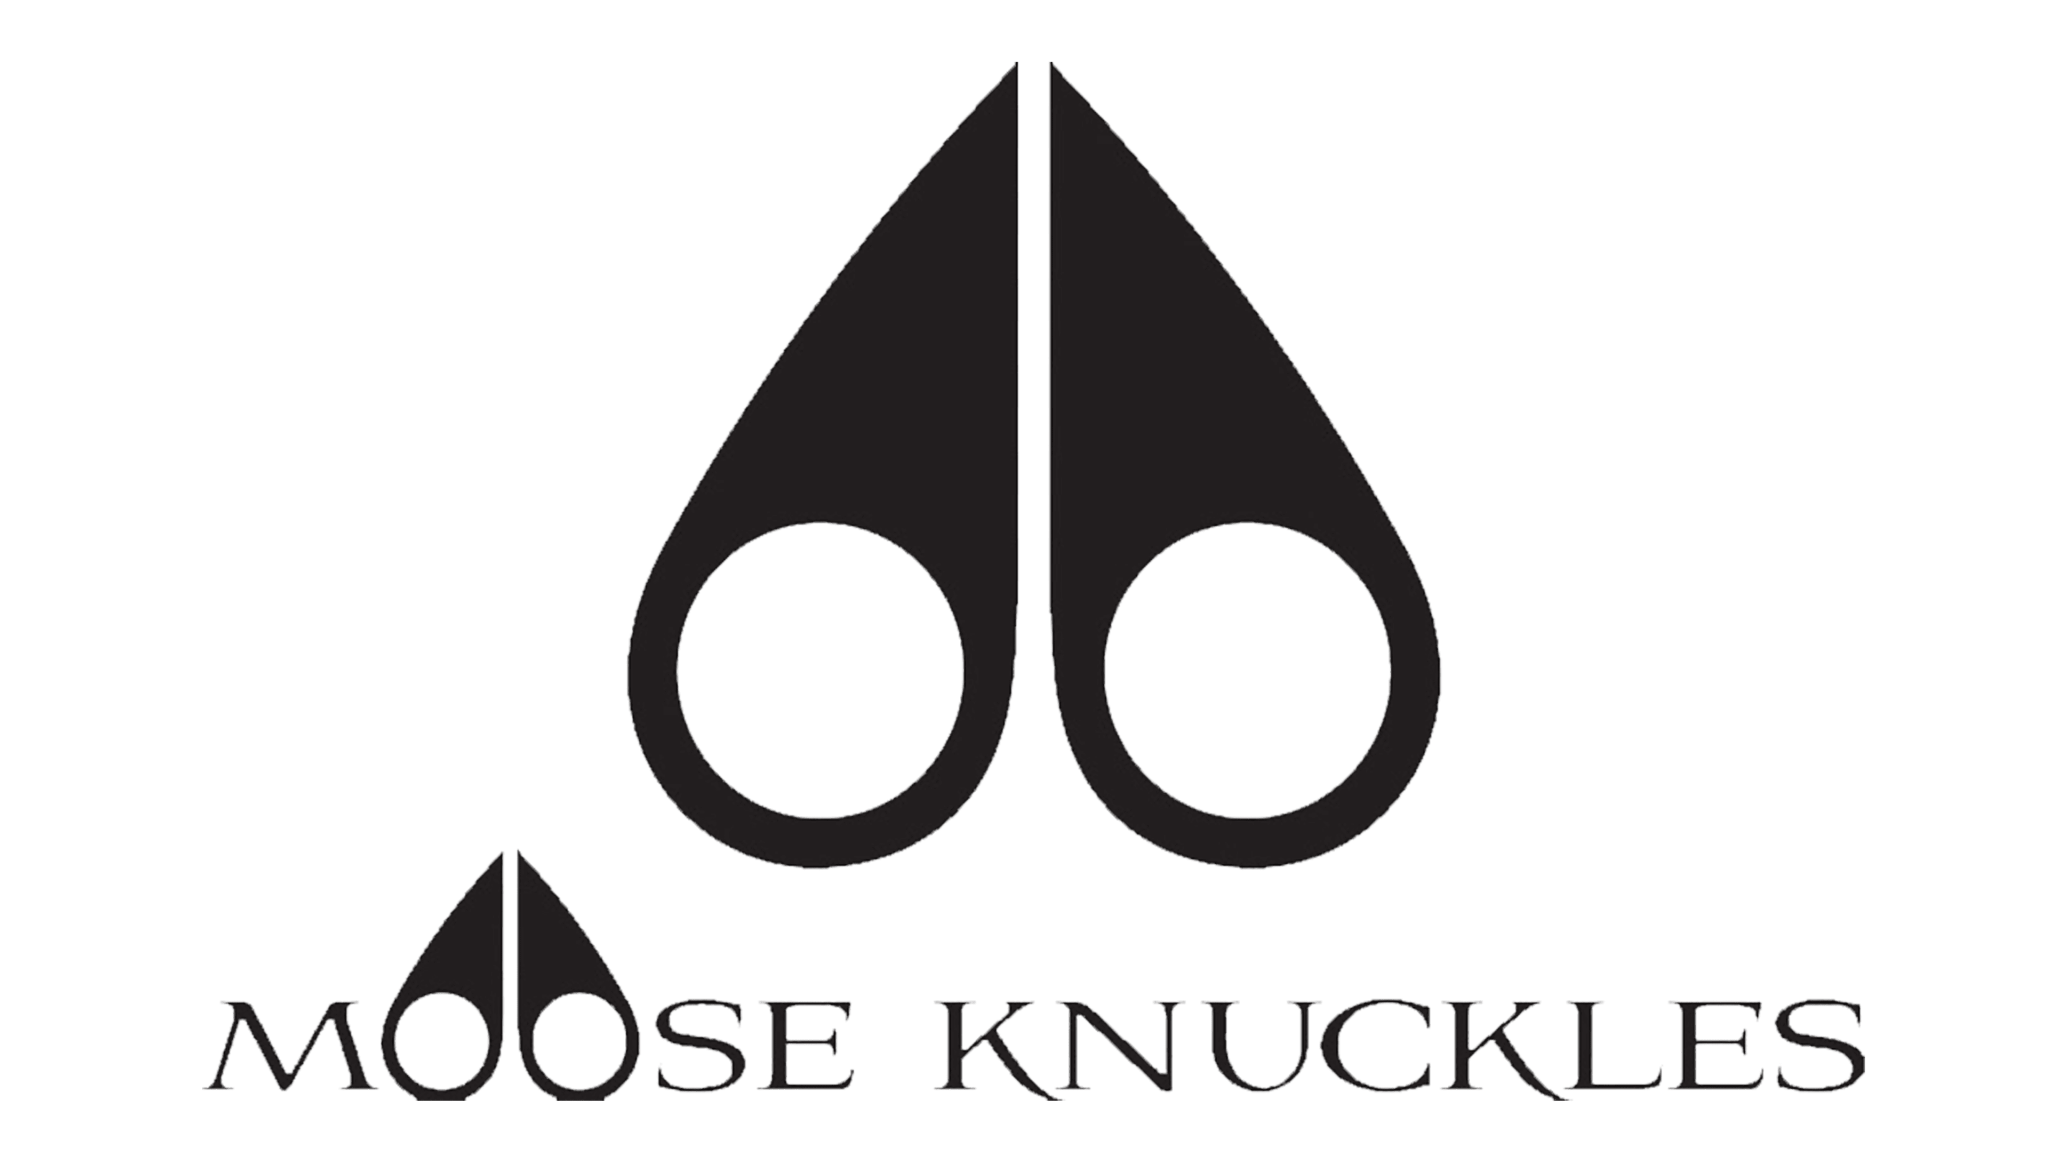 Moose Knuckles logo.